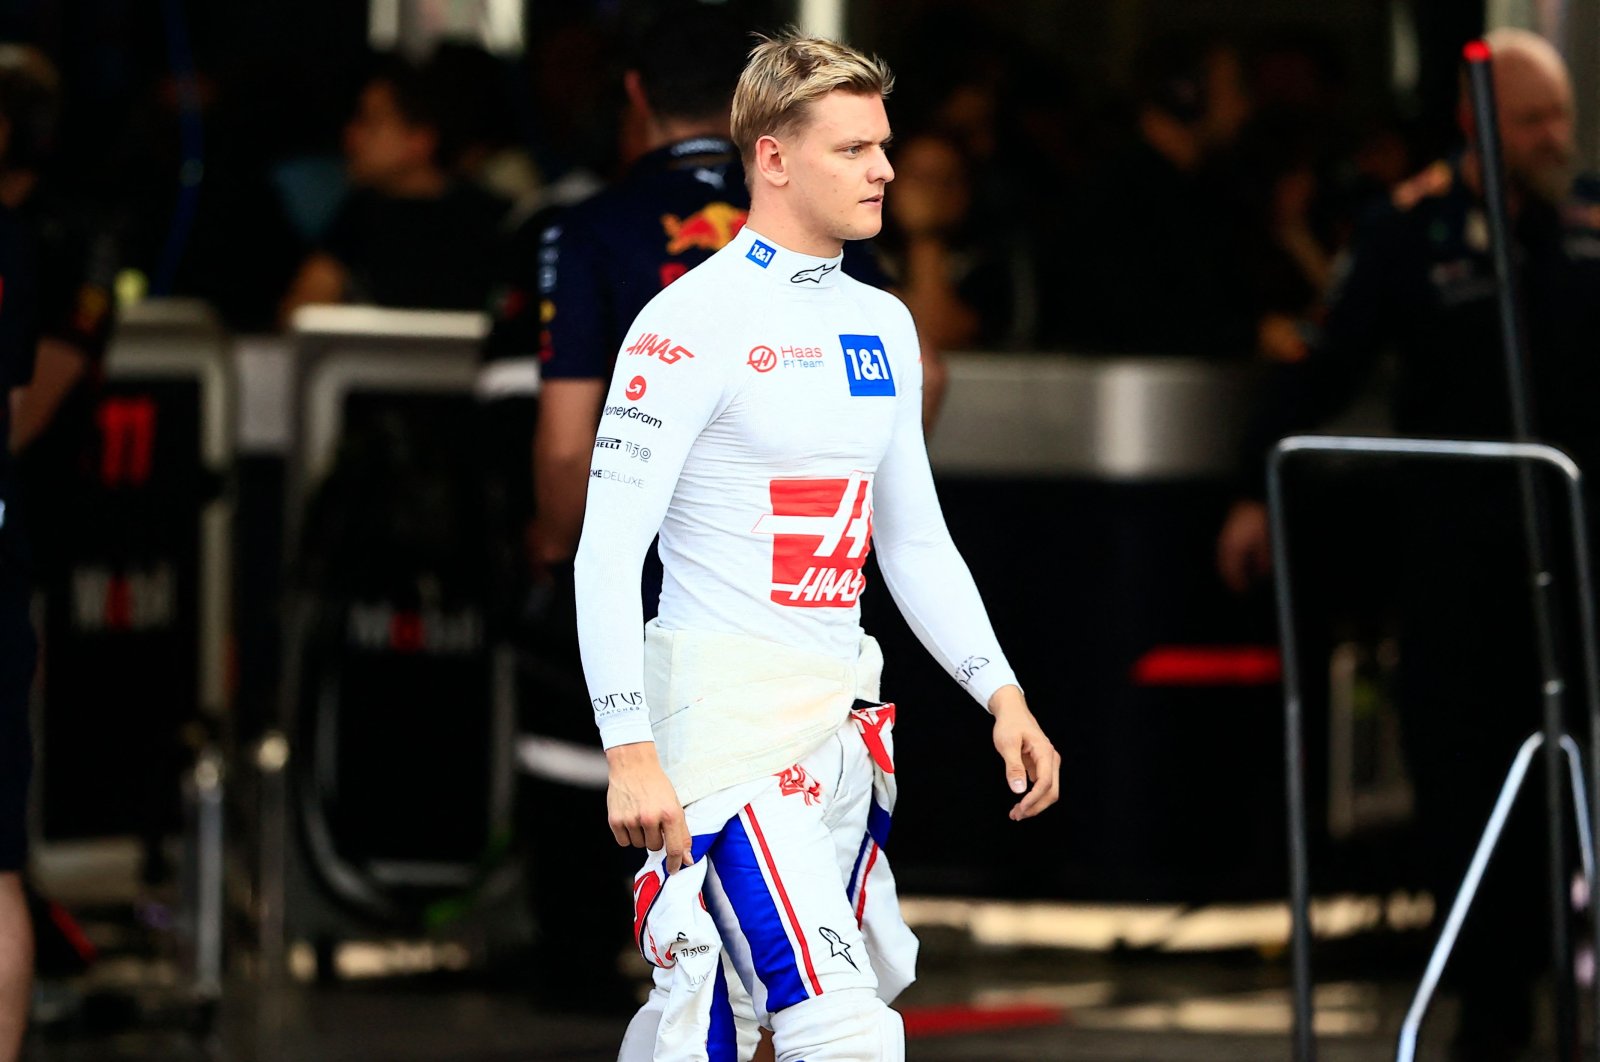 Haas meninggalkan Schumacher yang ‘kecewa’ tanpa tim untuk mendatangkan Hulkenberg